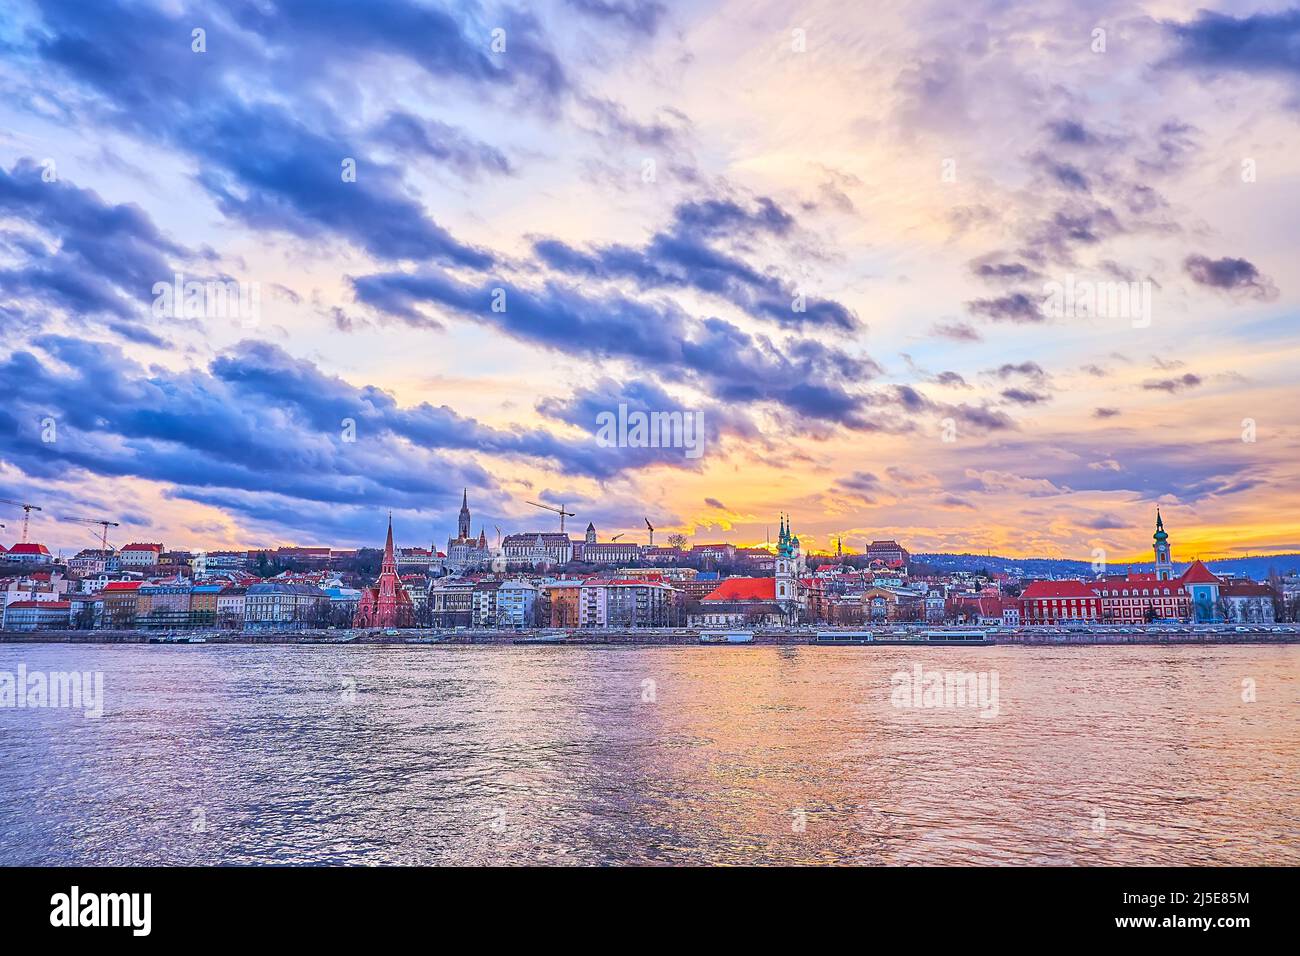 Panorama del quartiere di Buda, visto dietro il Danubio con i suoi edifici storici, le chiese e il Bastione dei pescatori in cima alla collina, Budapest, Ungheria Foto Stock